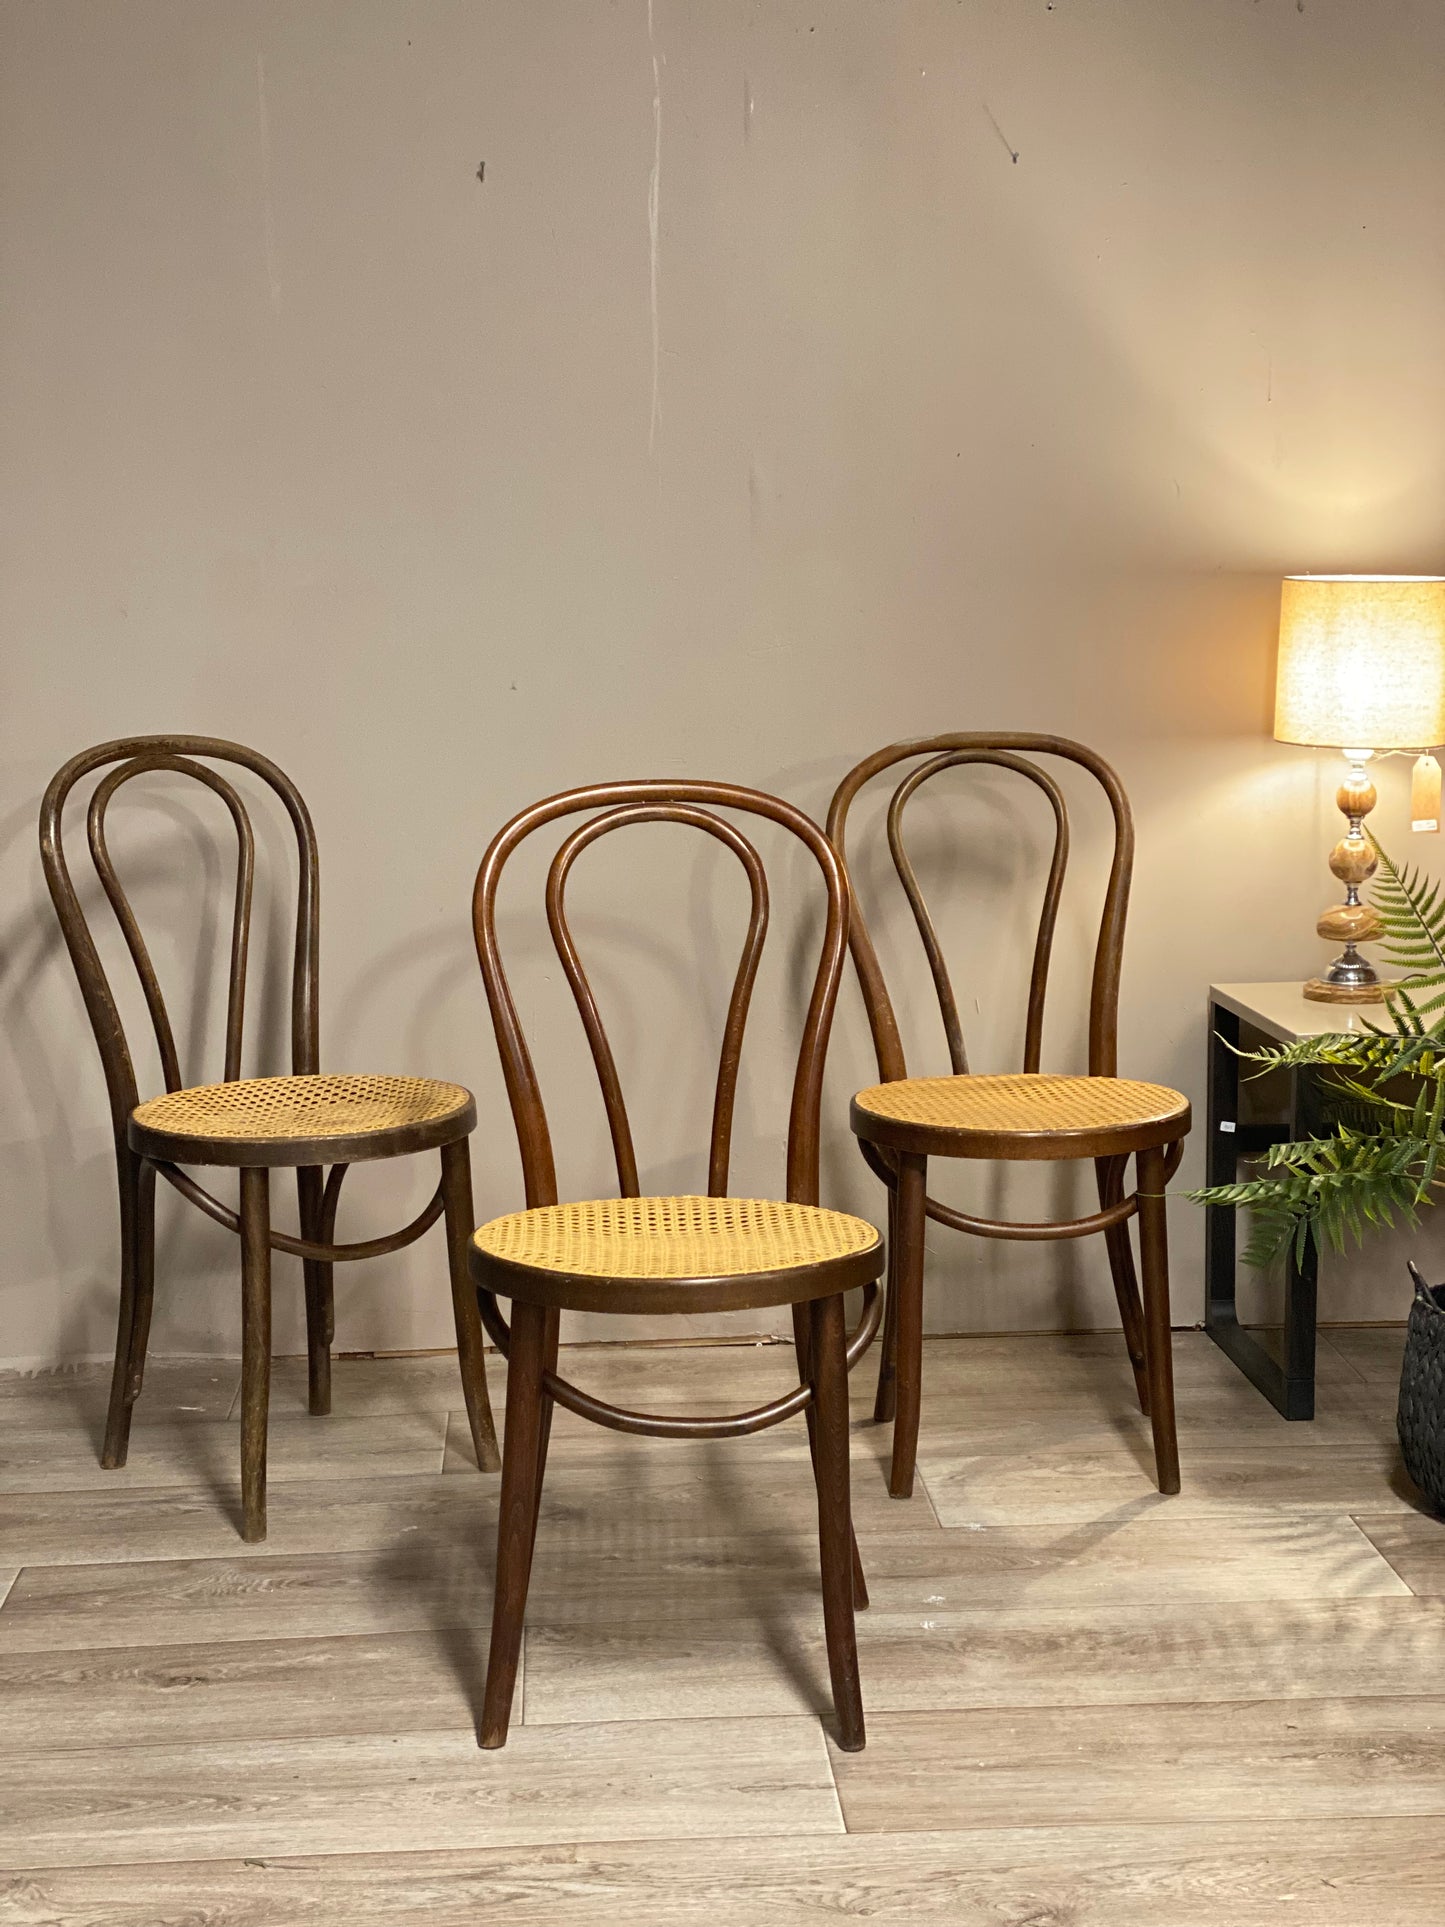 Originale vintage Thonet 18 stoler - Kvalitetsbrukt Møbel fra Hjembruket på Hjembruket